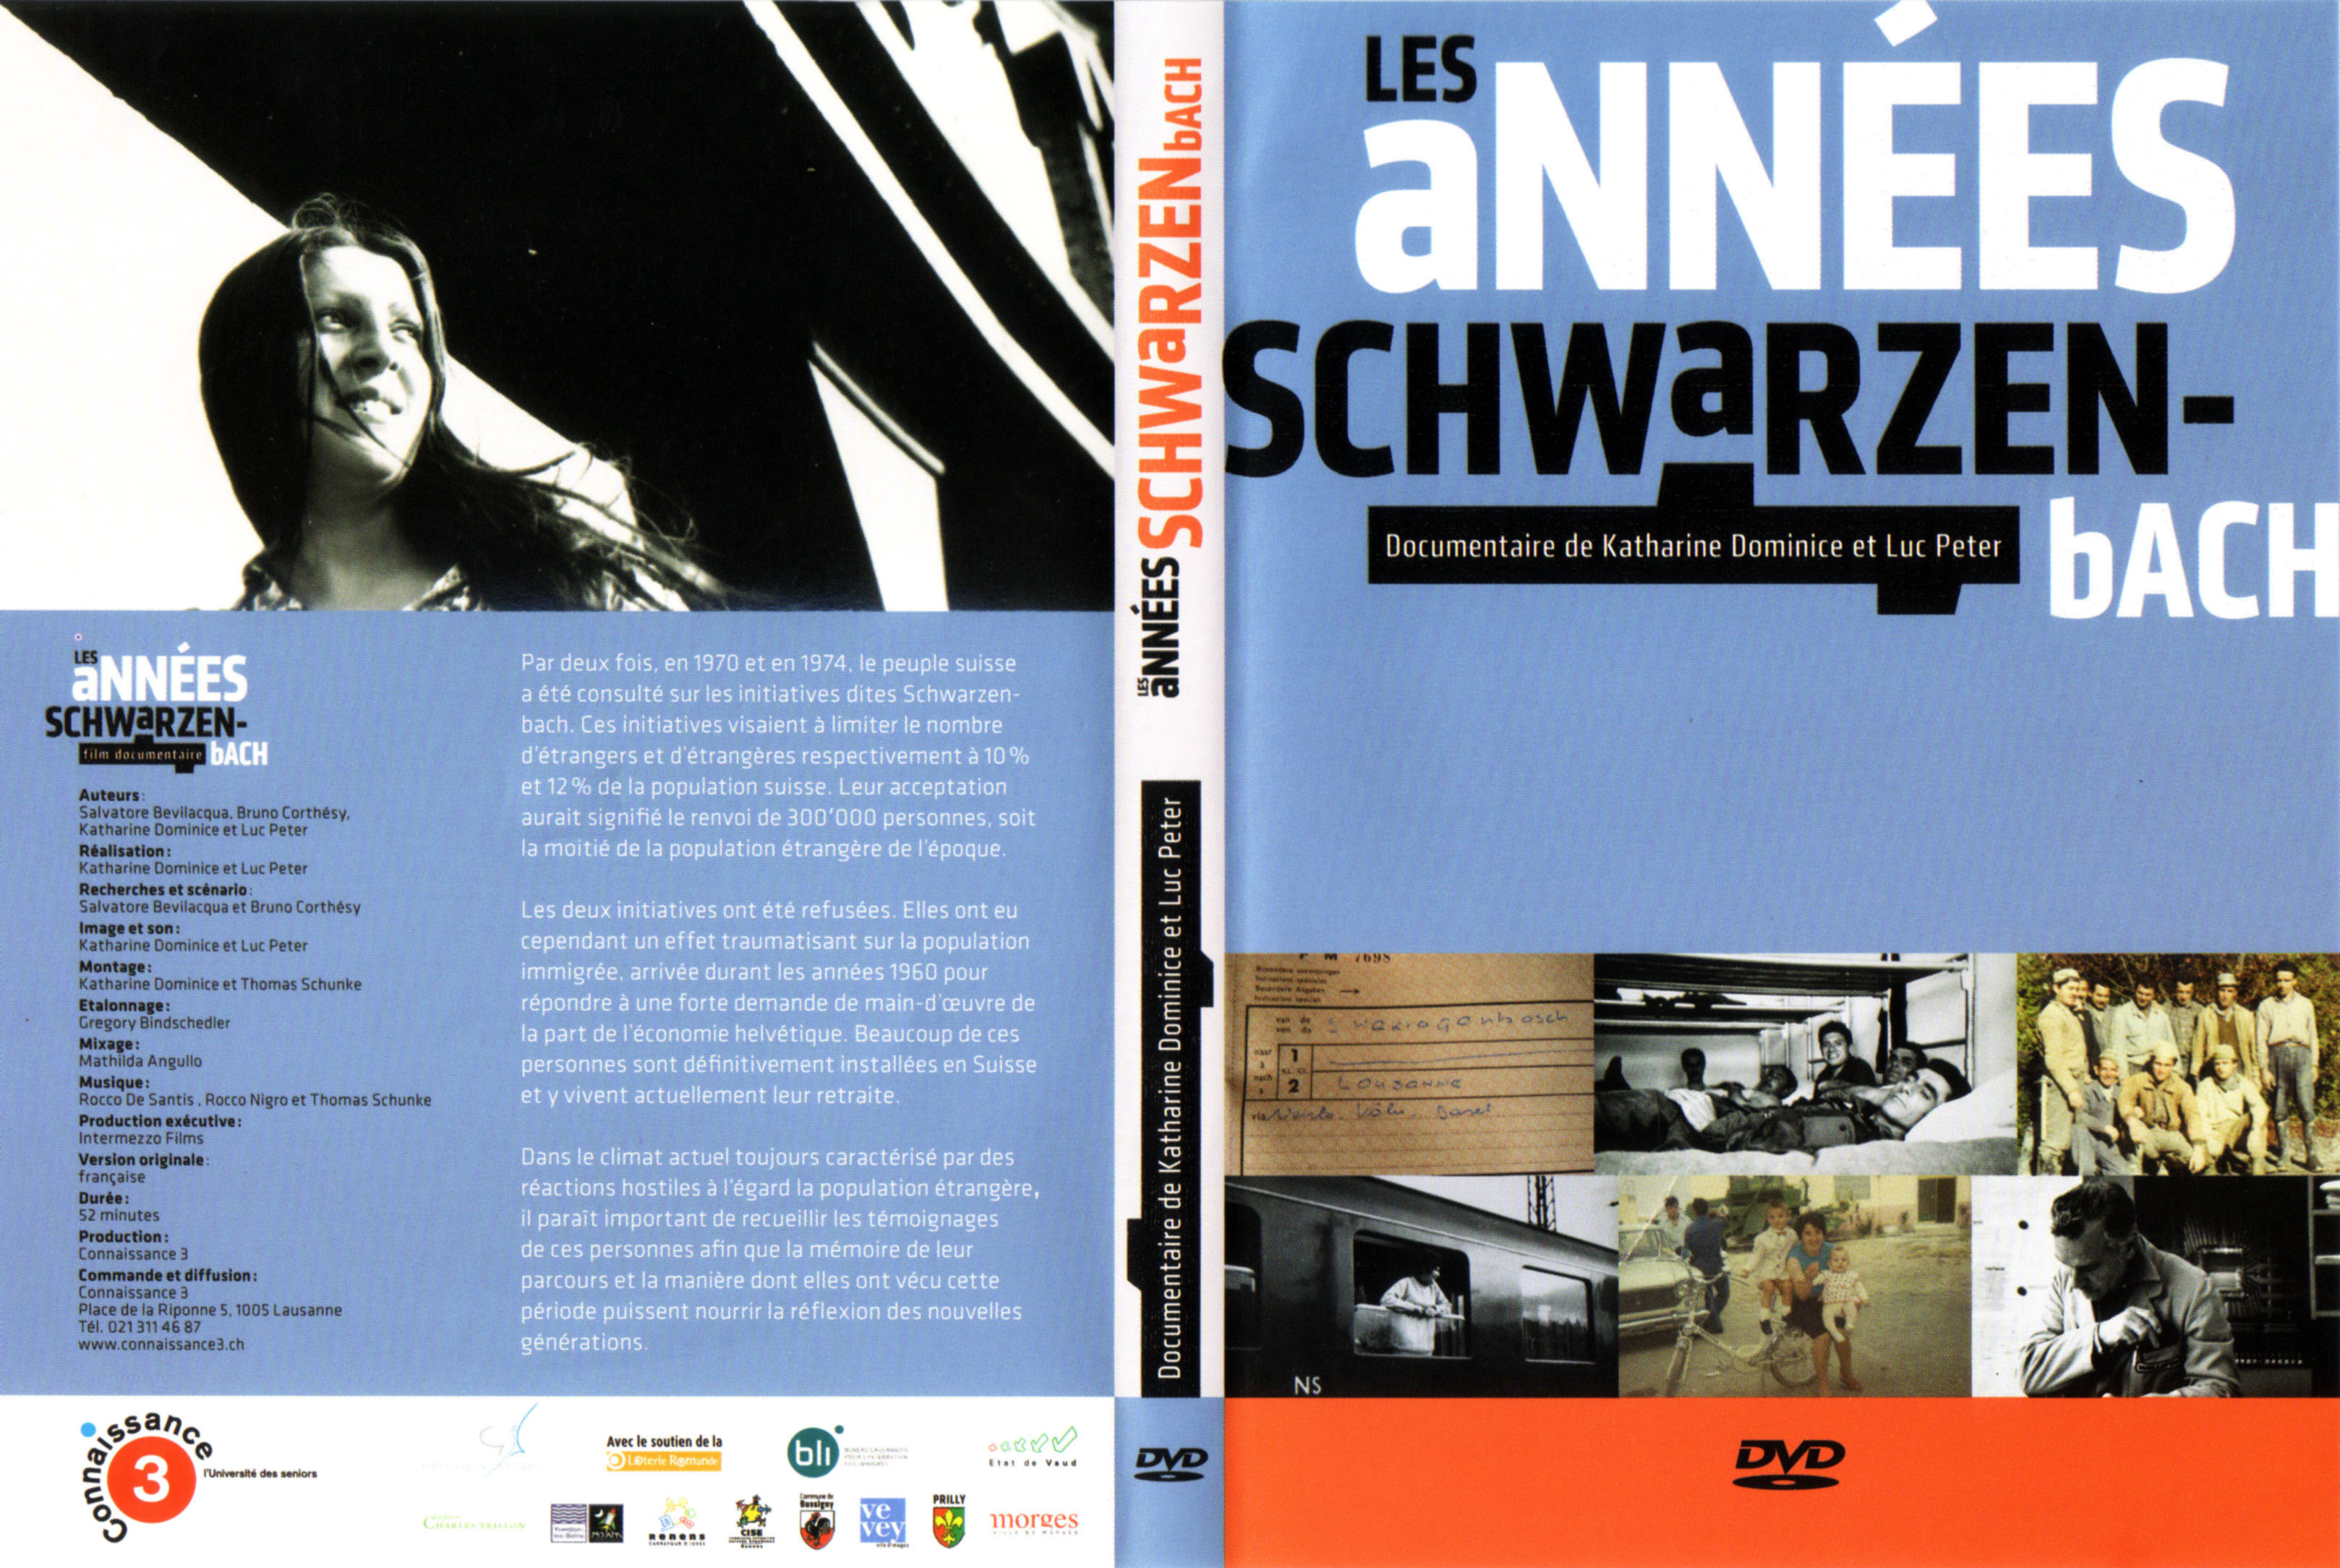 Jaquette DVD Les annes schwarzenbach